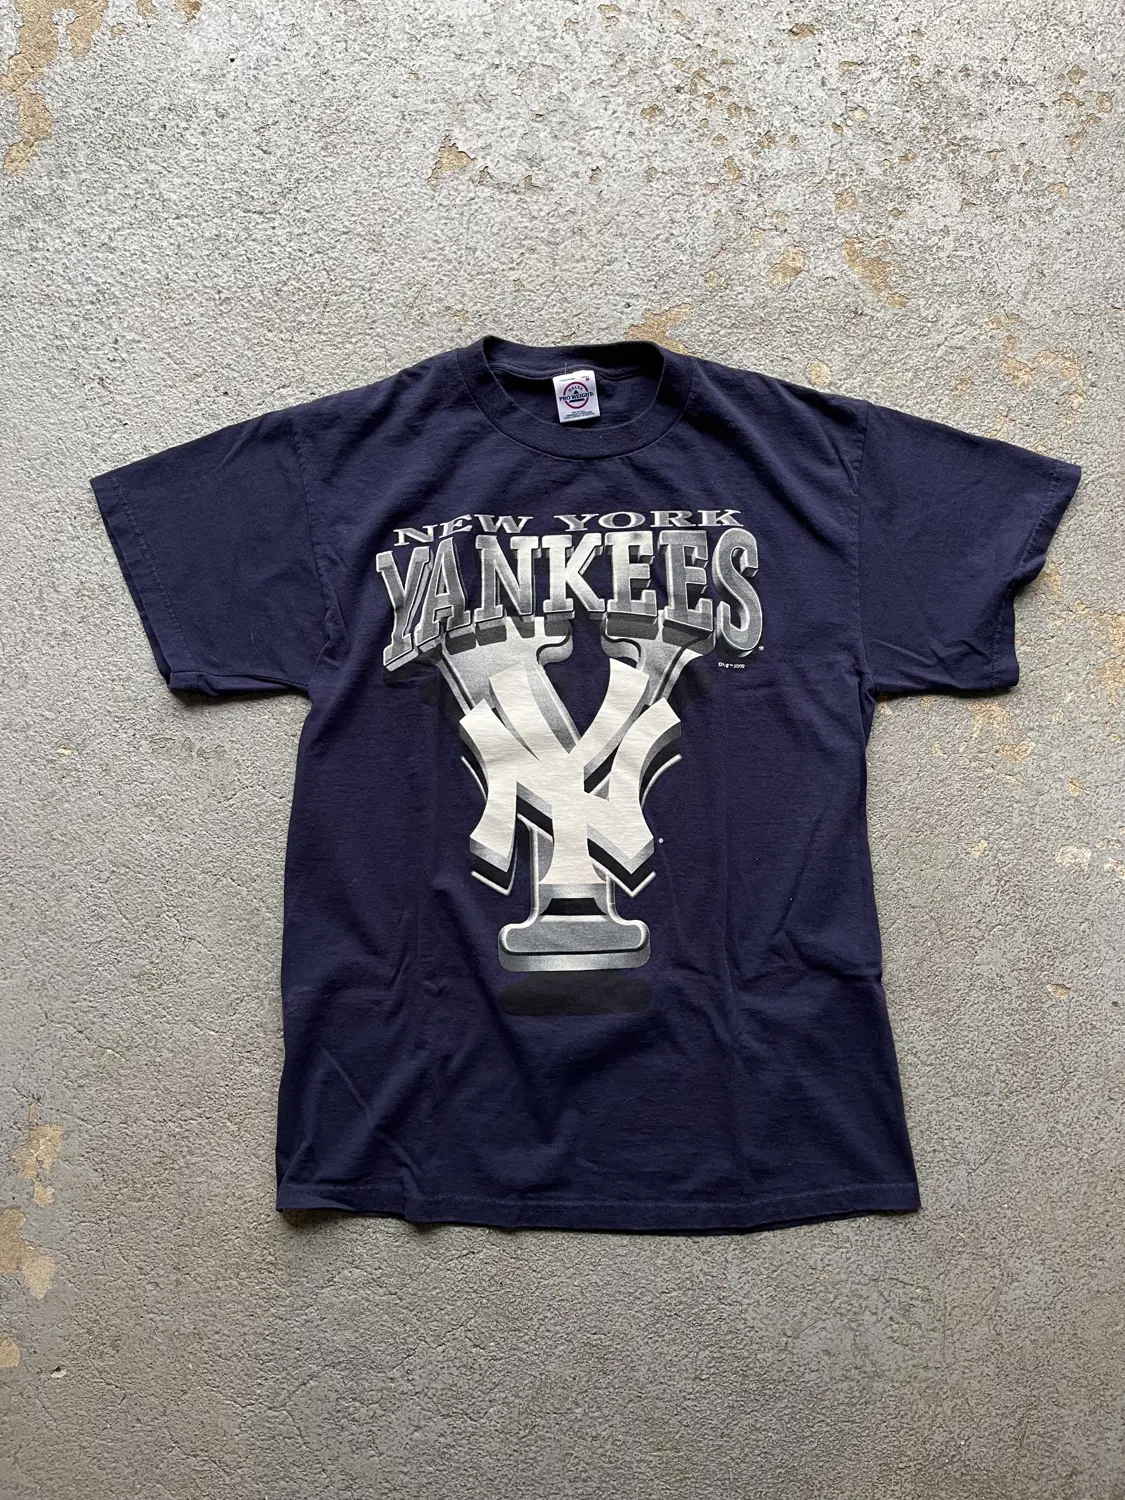 Vintage 2002 New York Yankees Tee